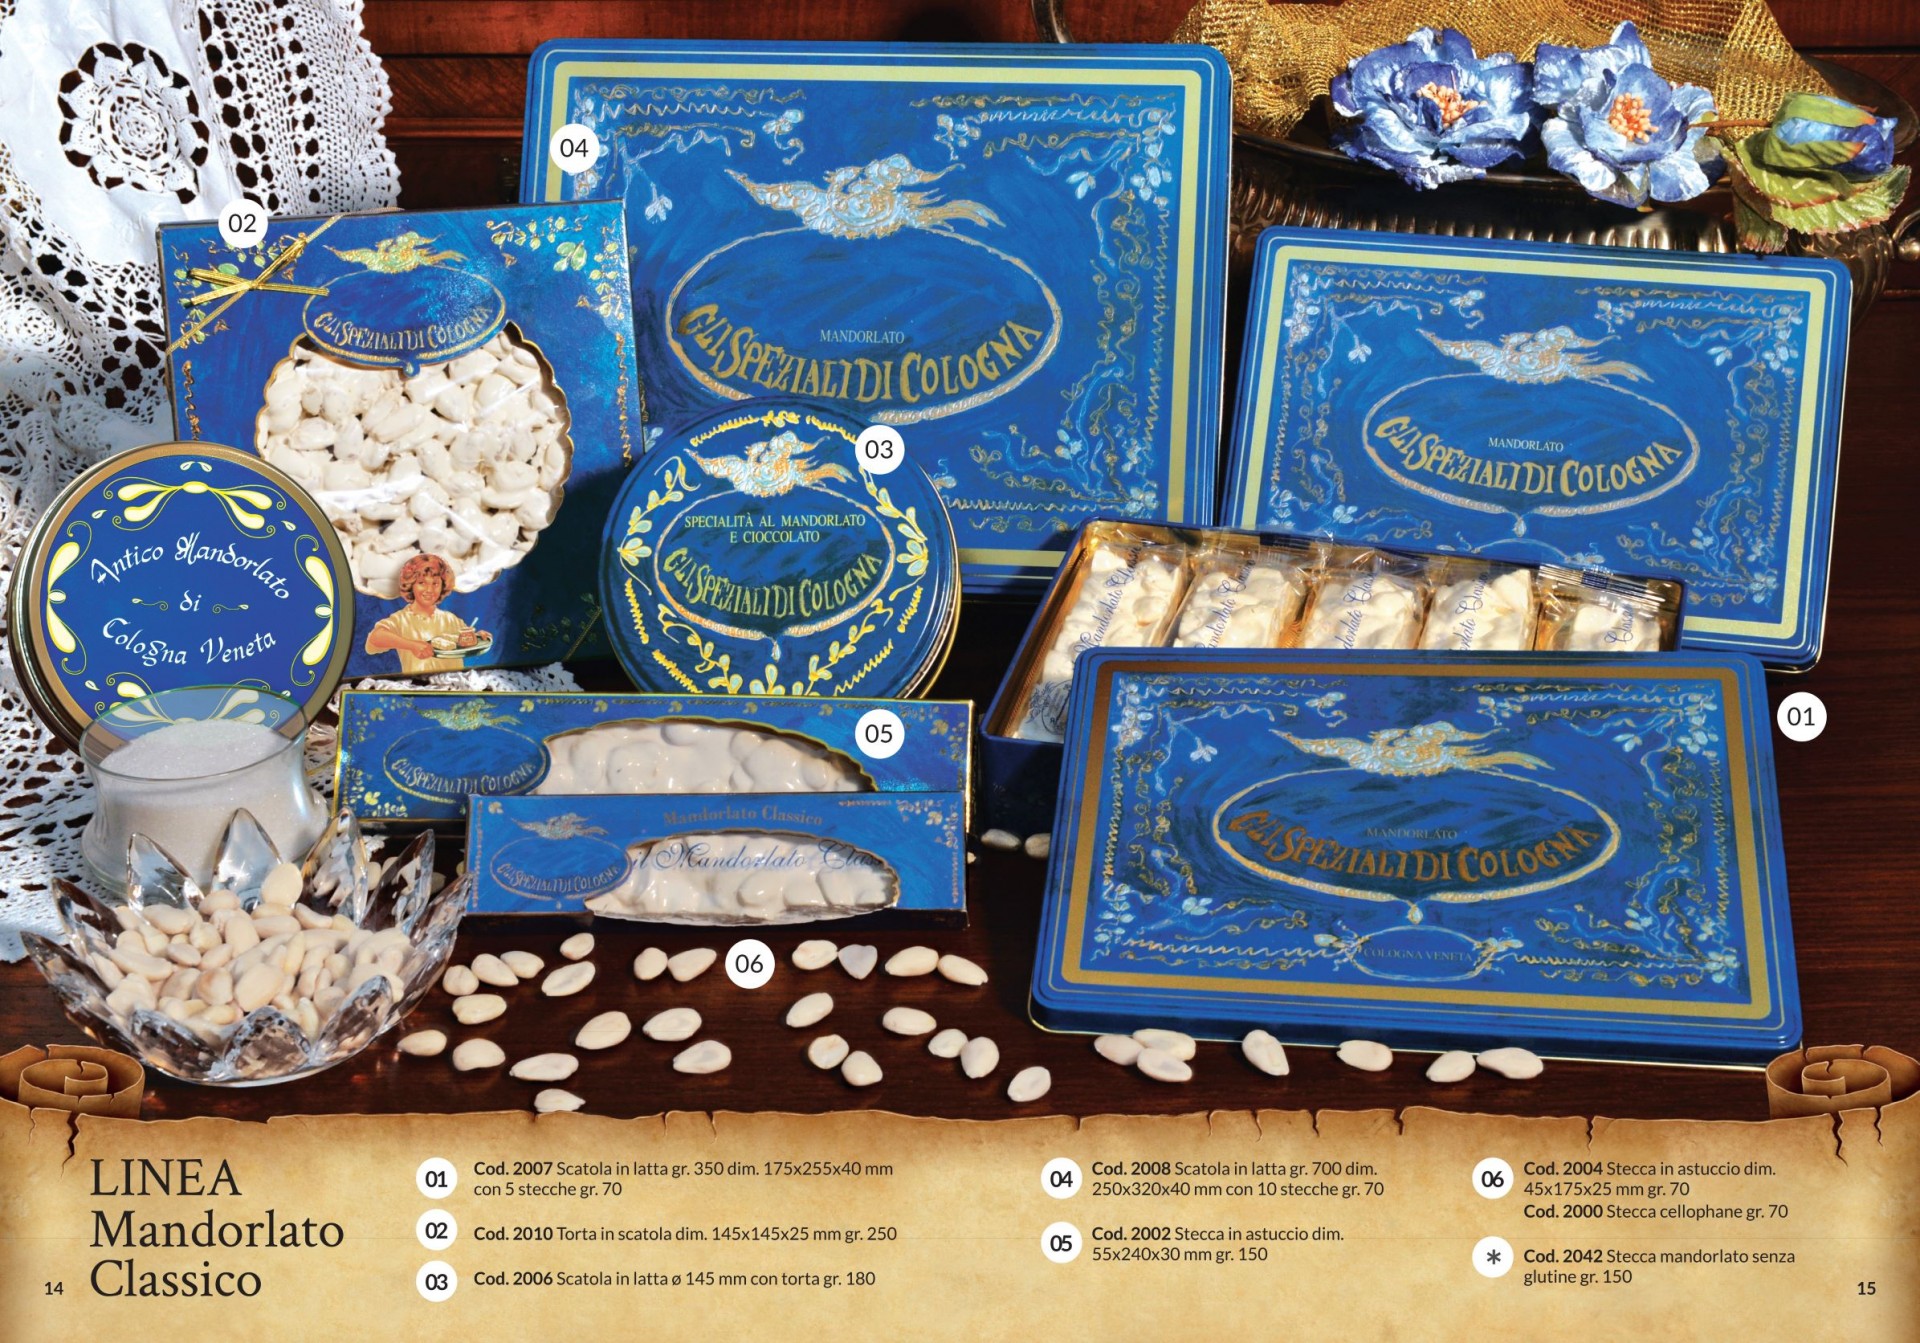 Stecche e torte di Mandorlato Classico nelle eleganti ed esclusive scatole di latta ed astucci di cartoncino di colore blu